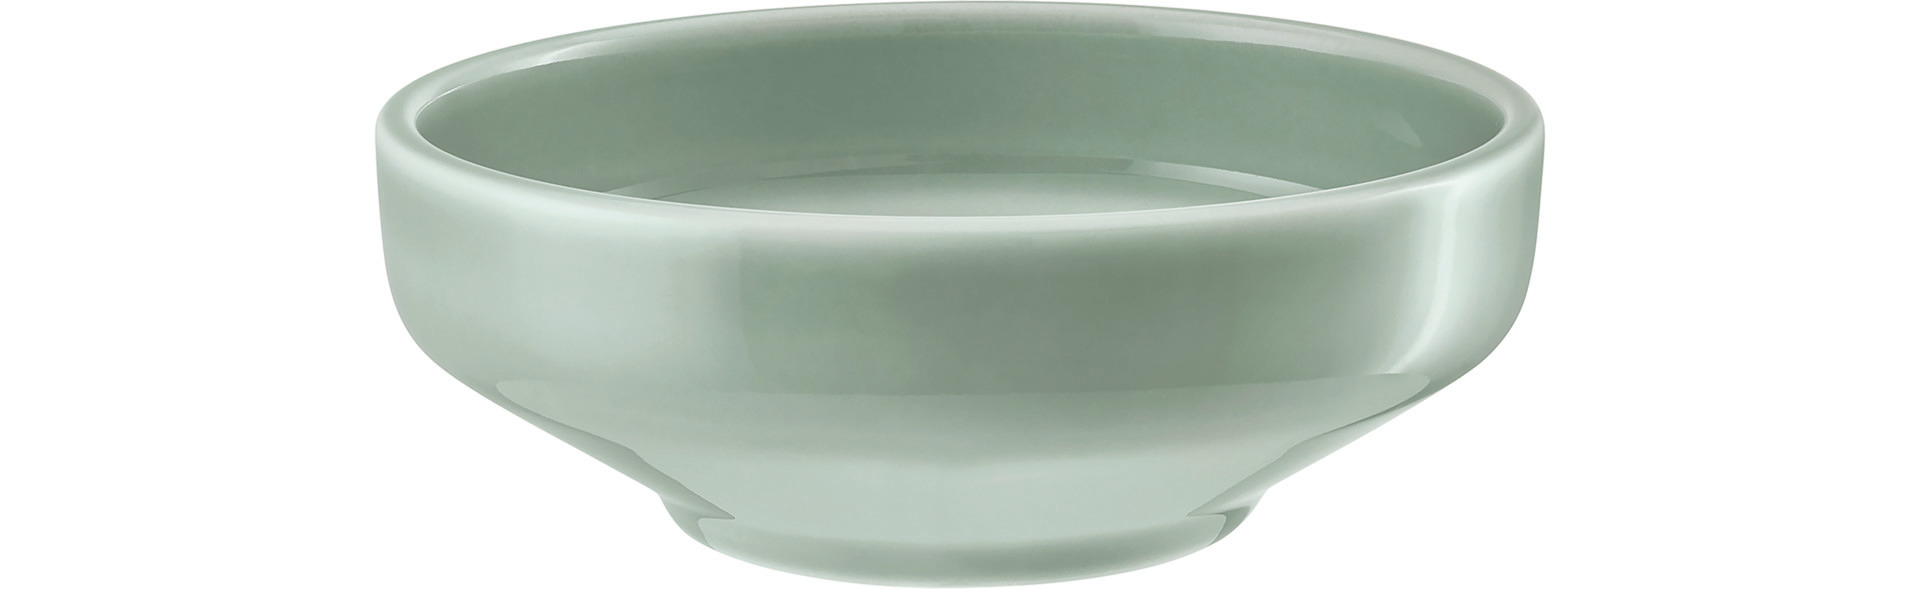 Shiro Glaze Frost, Bowl rund ø 220 mm / 1,50 l